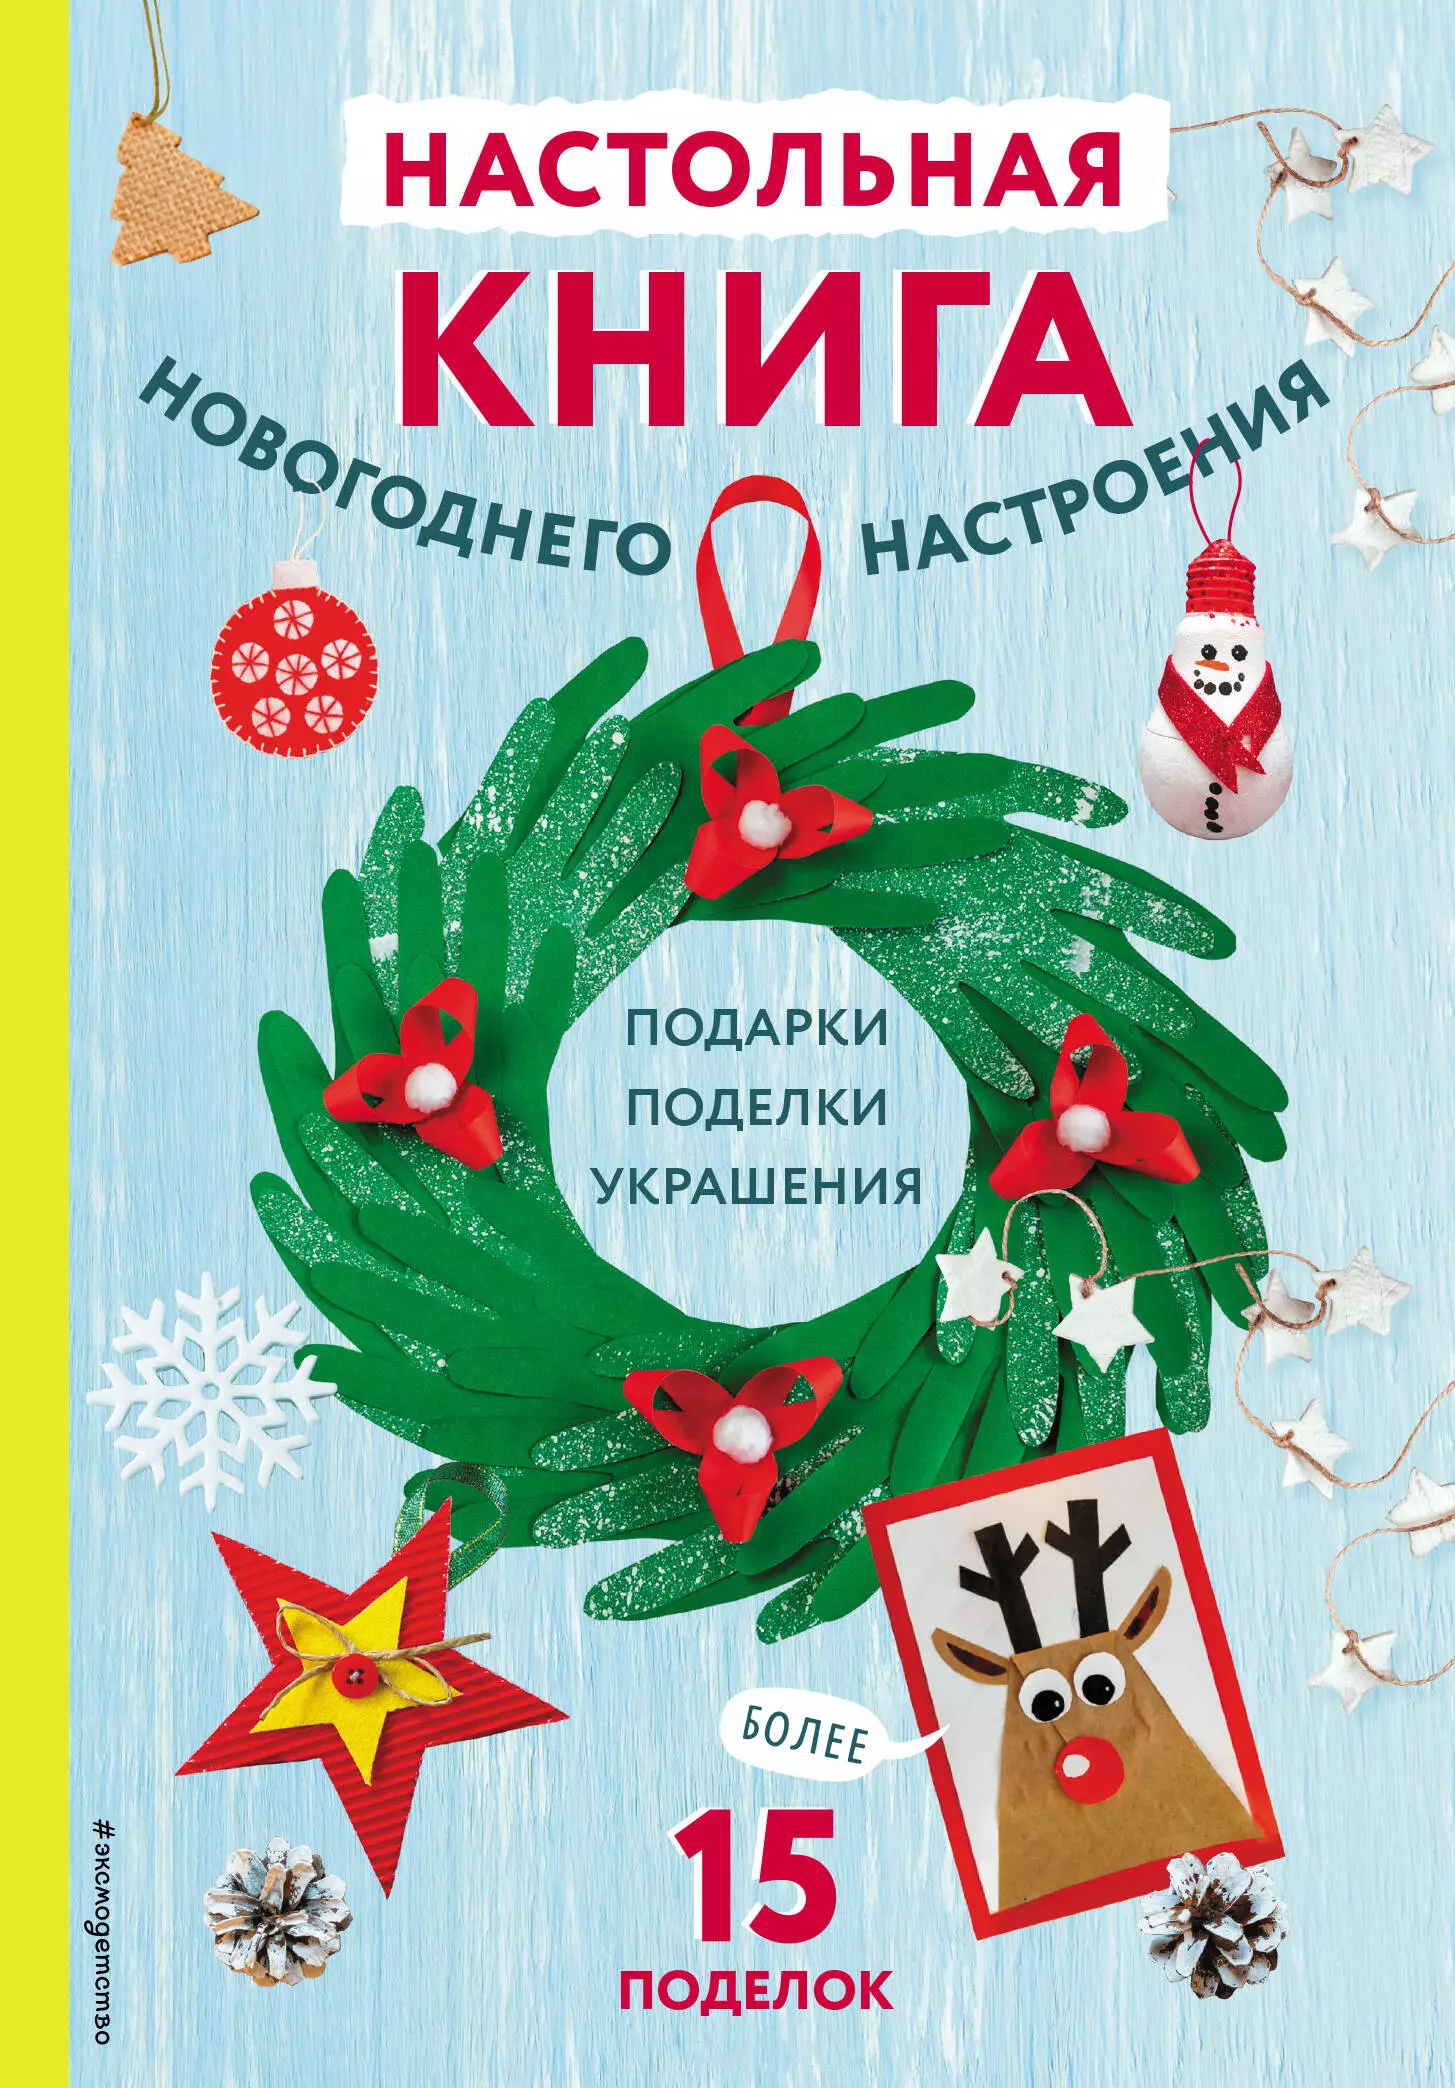 Новогодние композиции своими руками: украшаем дом на Новый год — Украина